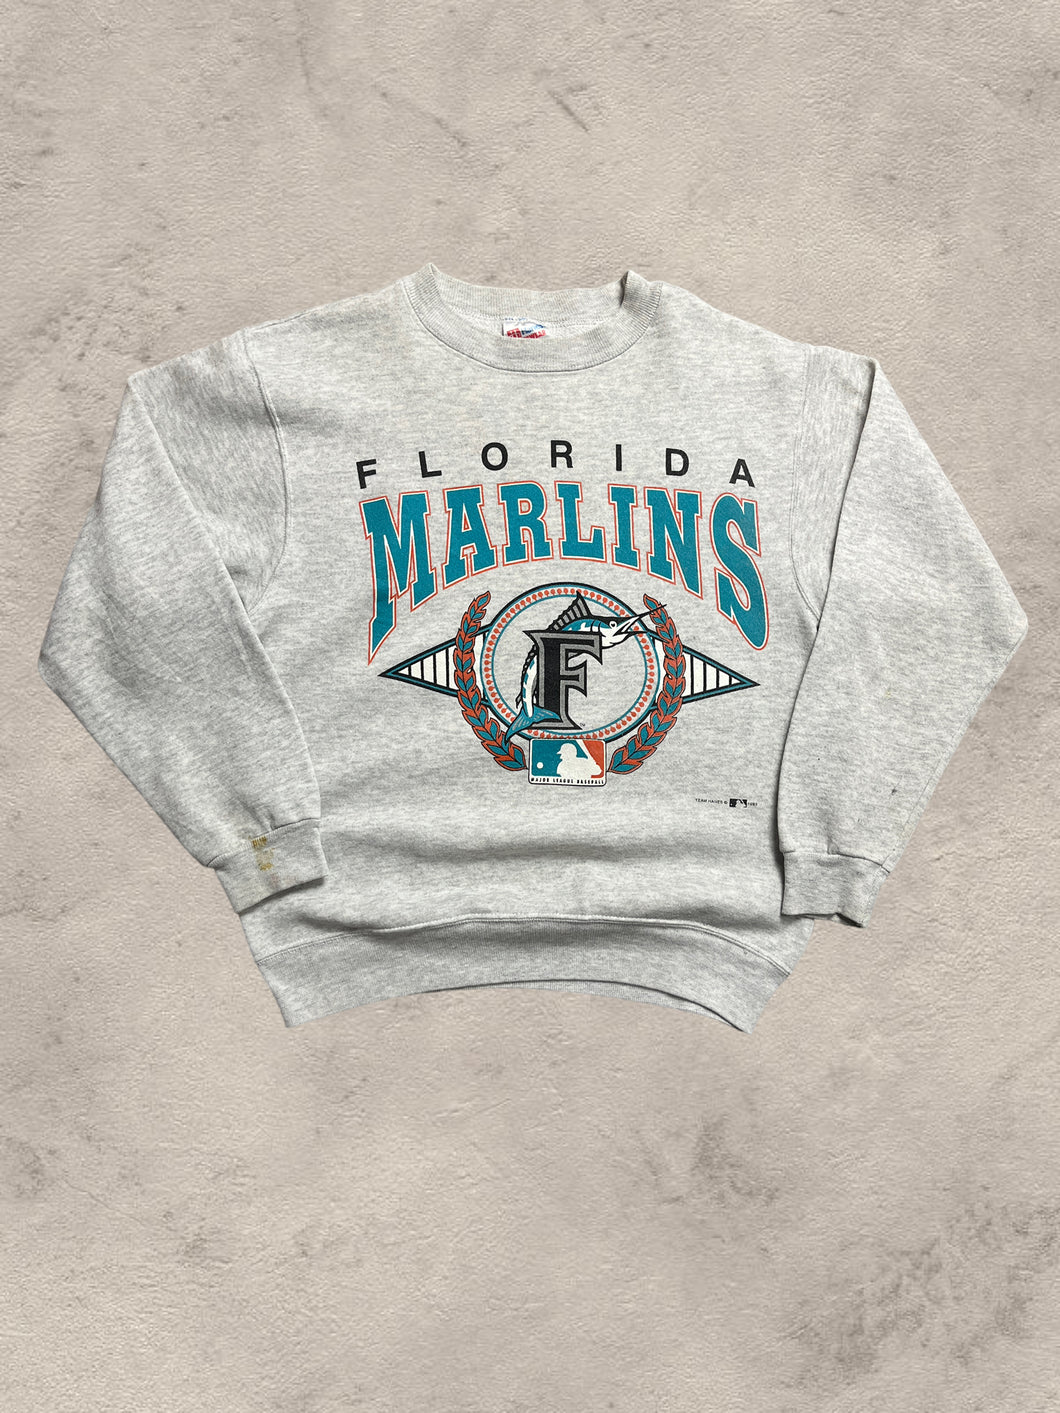 1993 Florida Marlins MLB Sweatshirt - Small